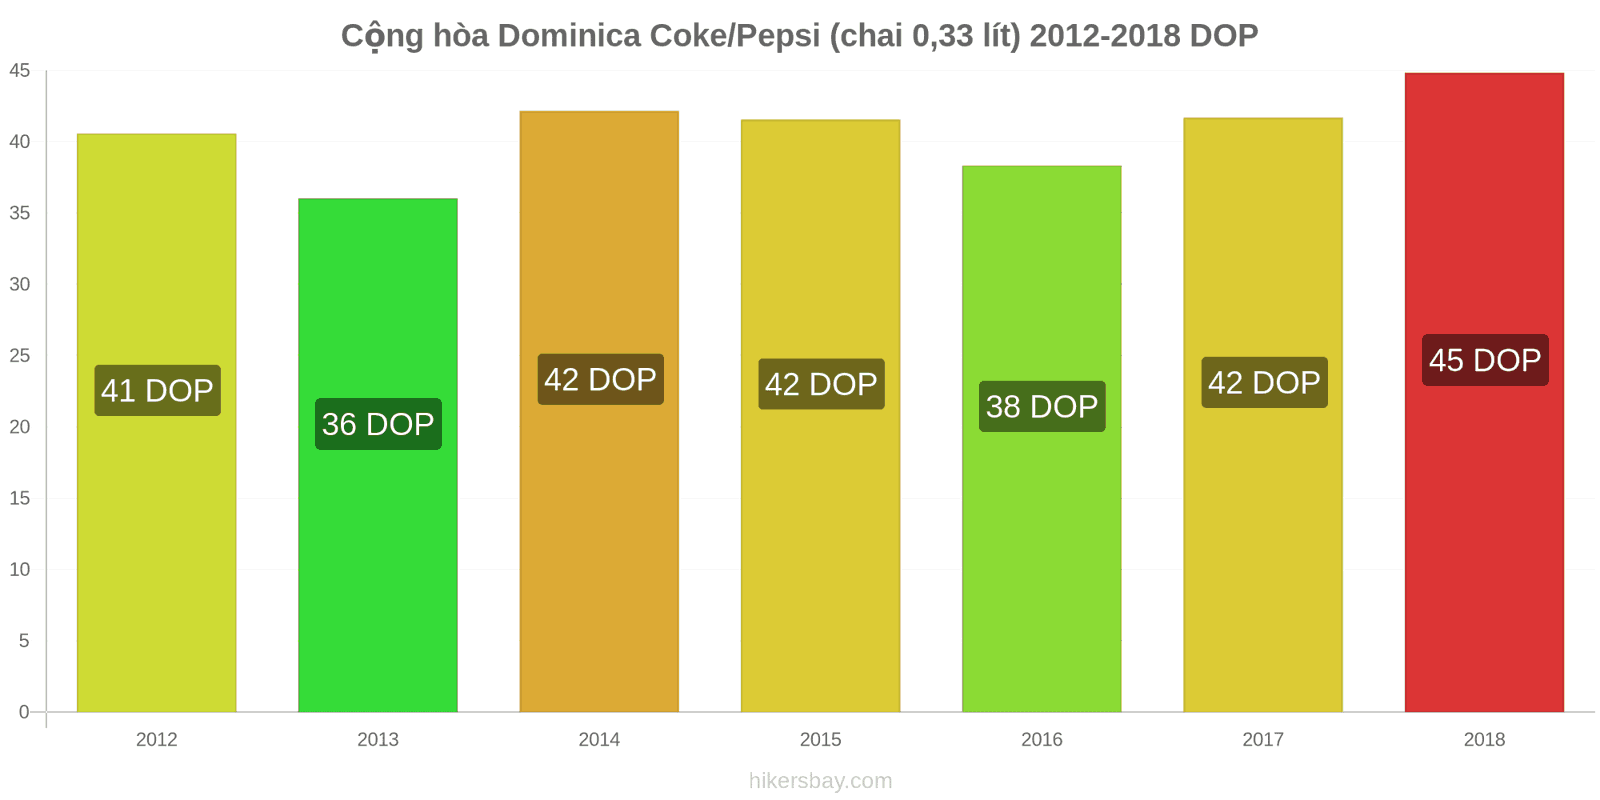 Cộng hòa Dominica thay đổi giá cả Coca-Cola/Pepsi (chai 0.33 lít) hikersbay.com